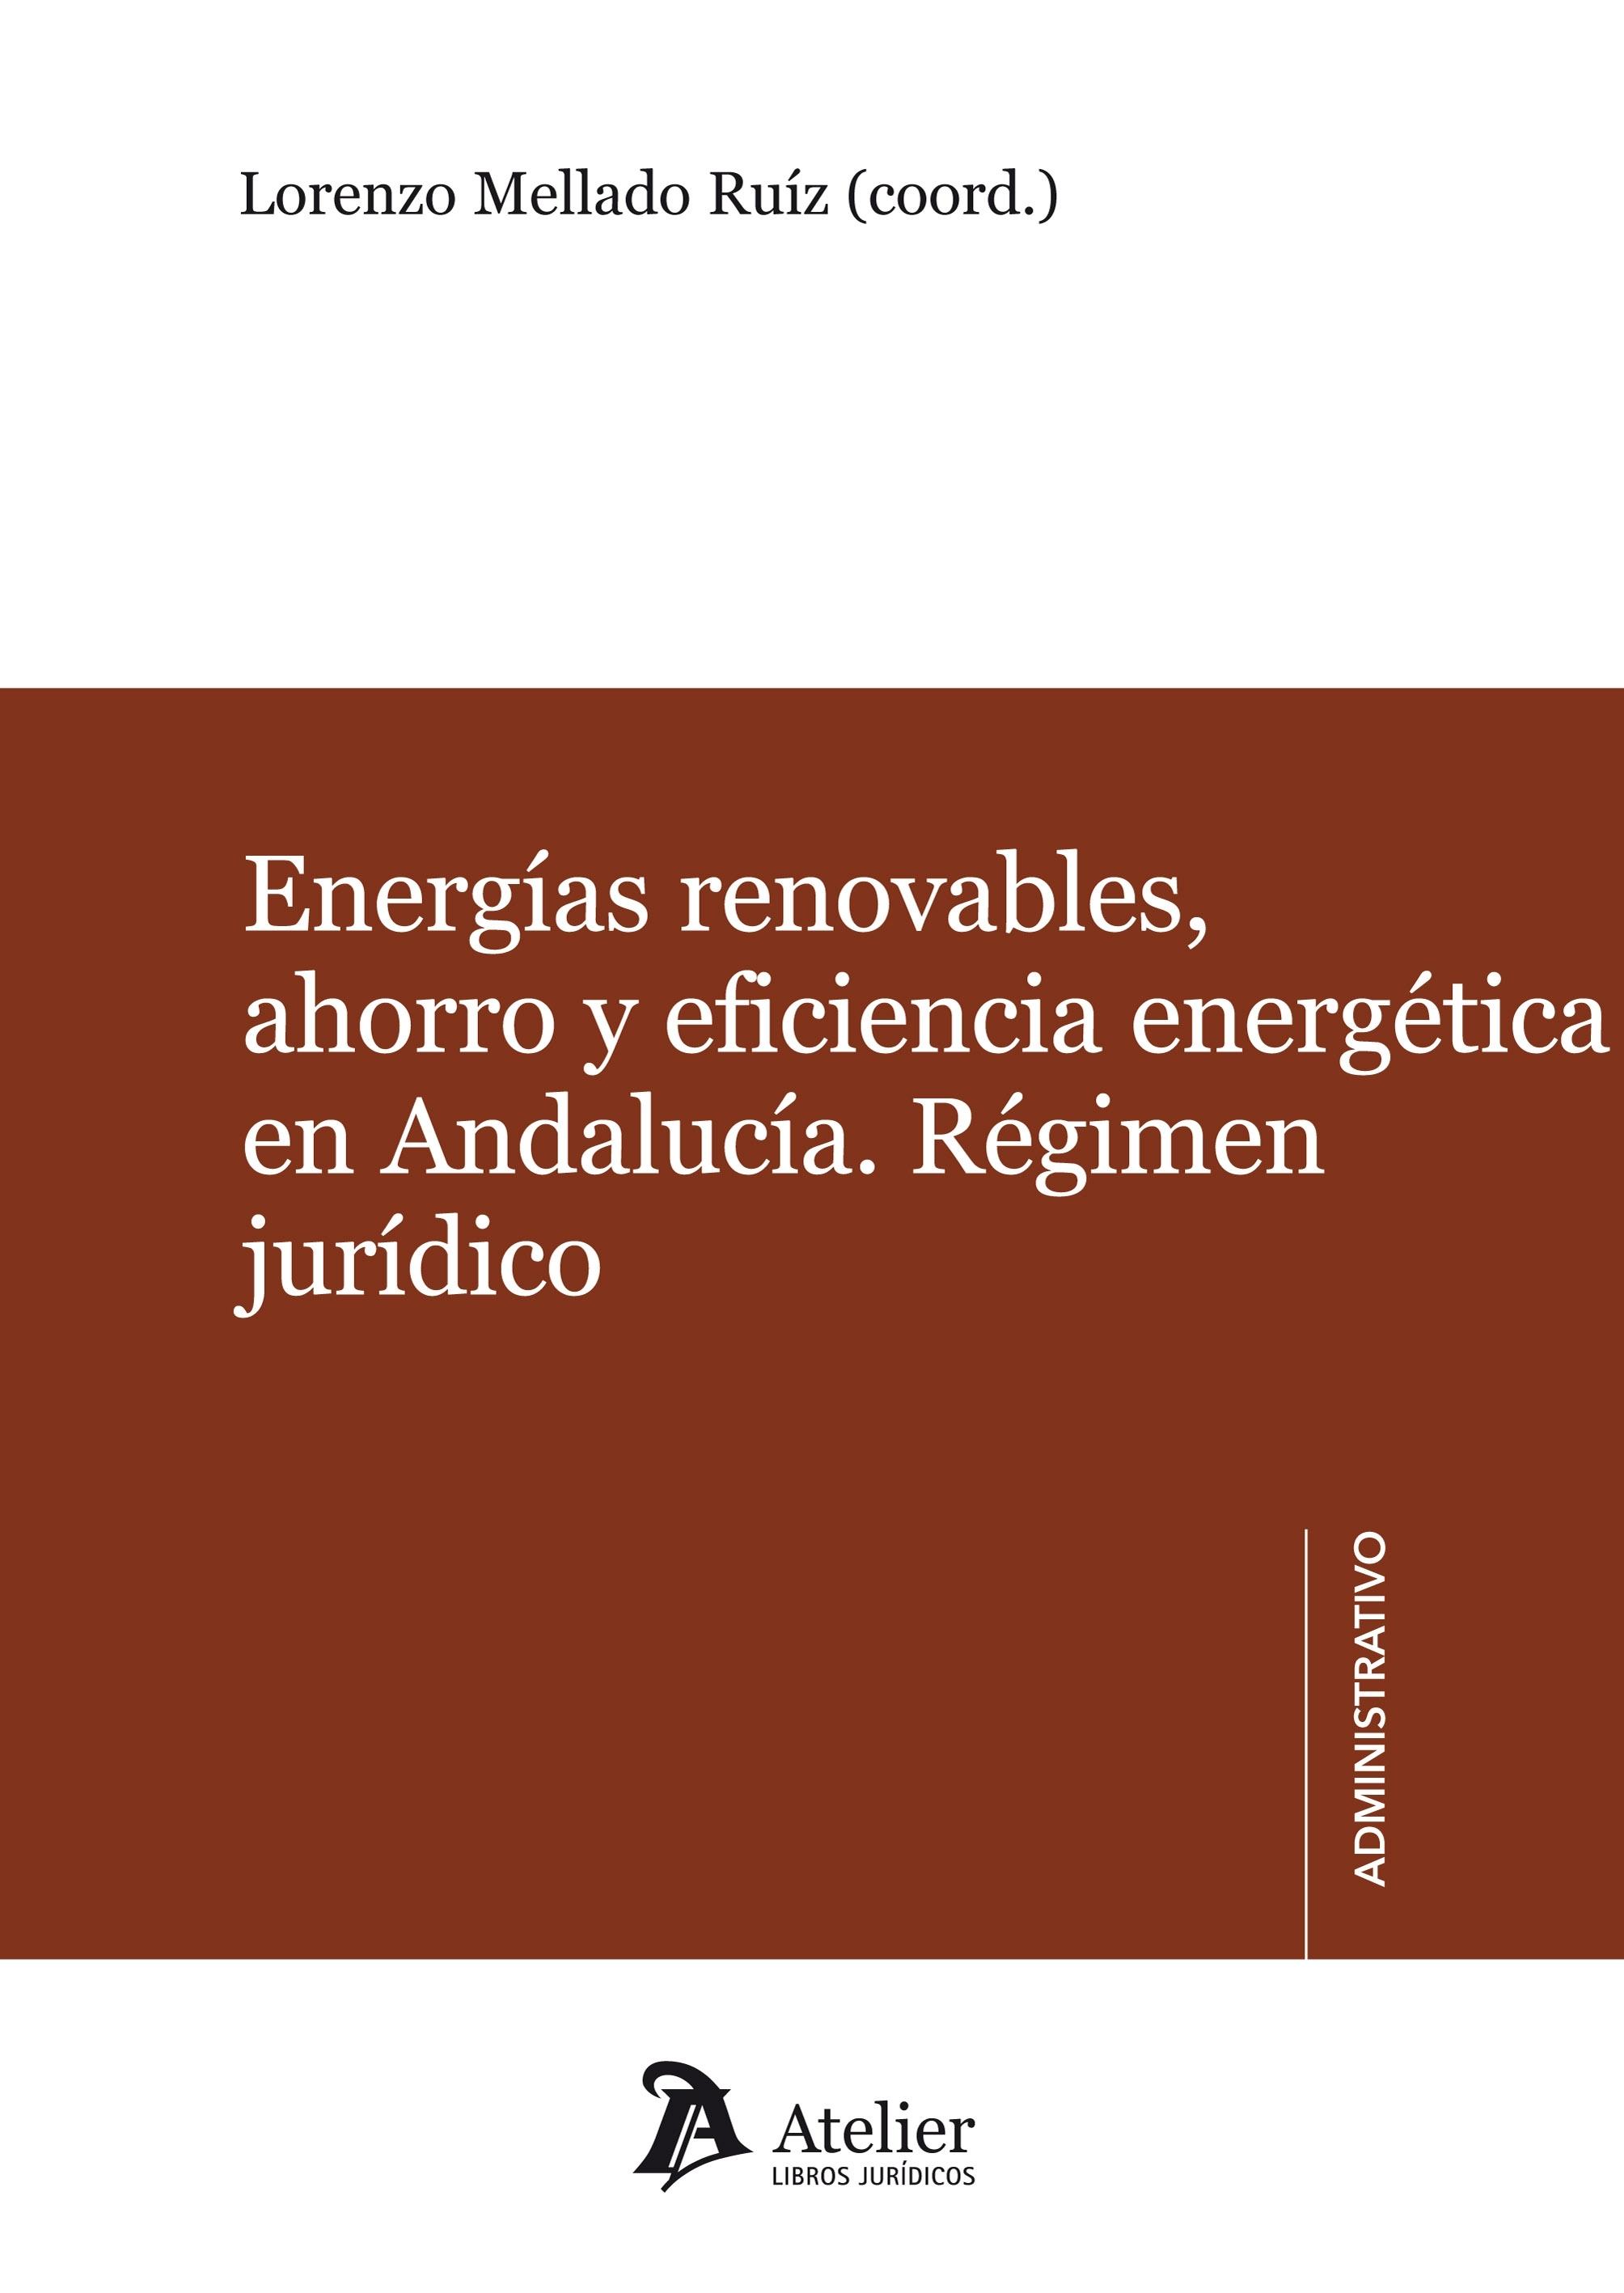 ENERGIAS RENOVABLES, AHORRO Y EFICIENCIA ENERGETICA EN ANDALUCIA.